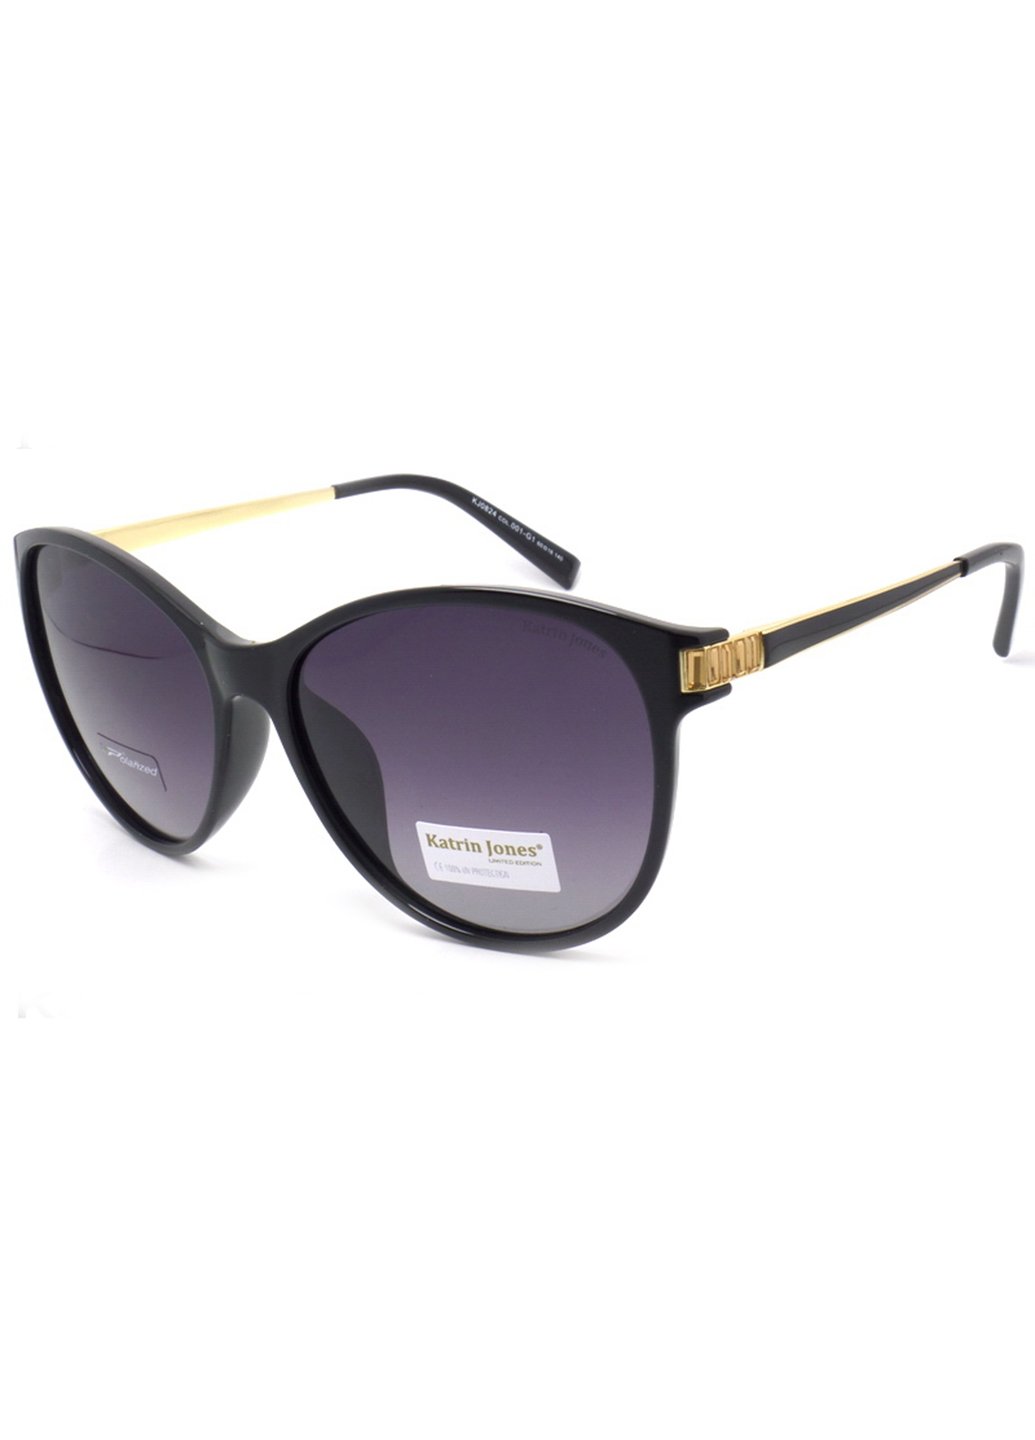 Купить Женские солнцезащитные очки Katrin Jones с поляризацией KJ0824 180031 - Черный в интернет-магазине